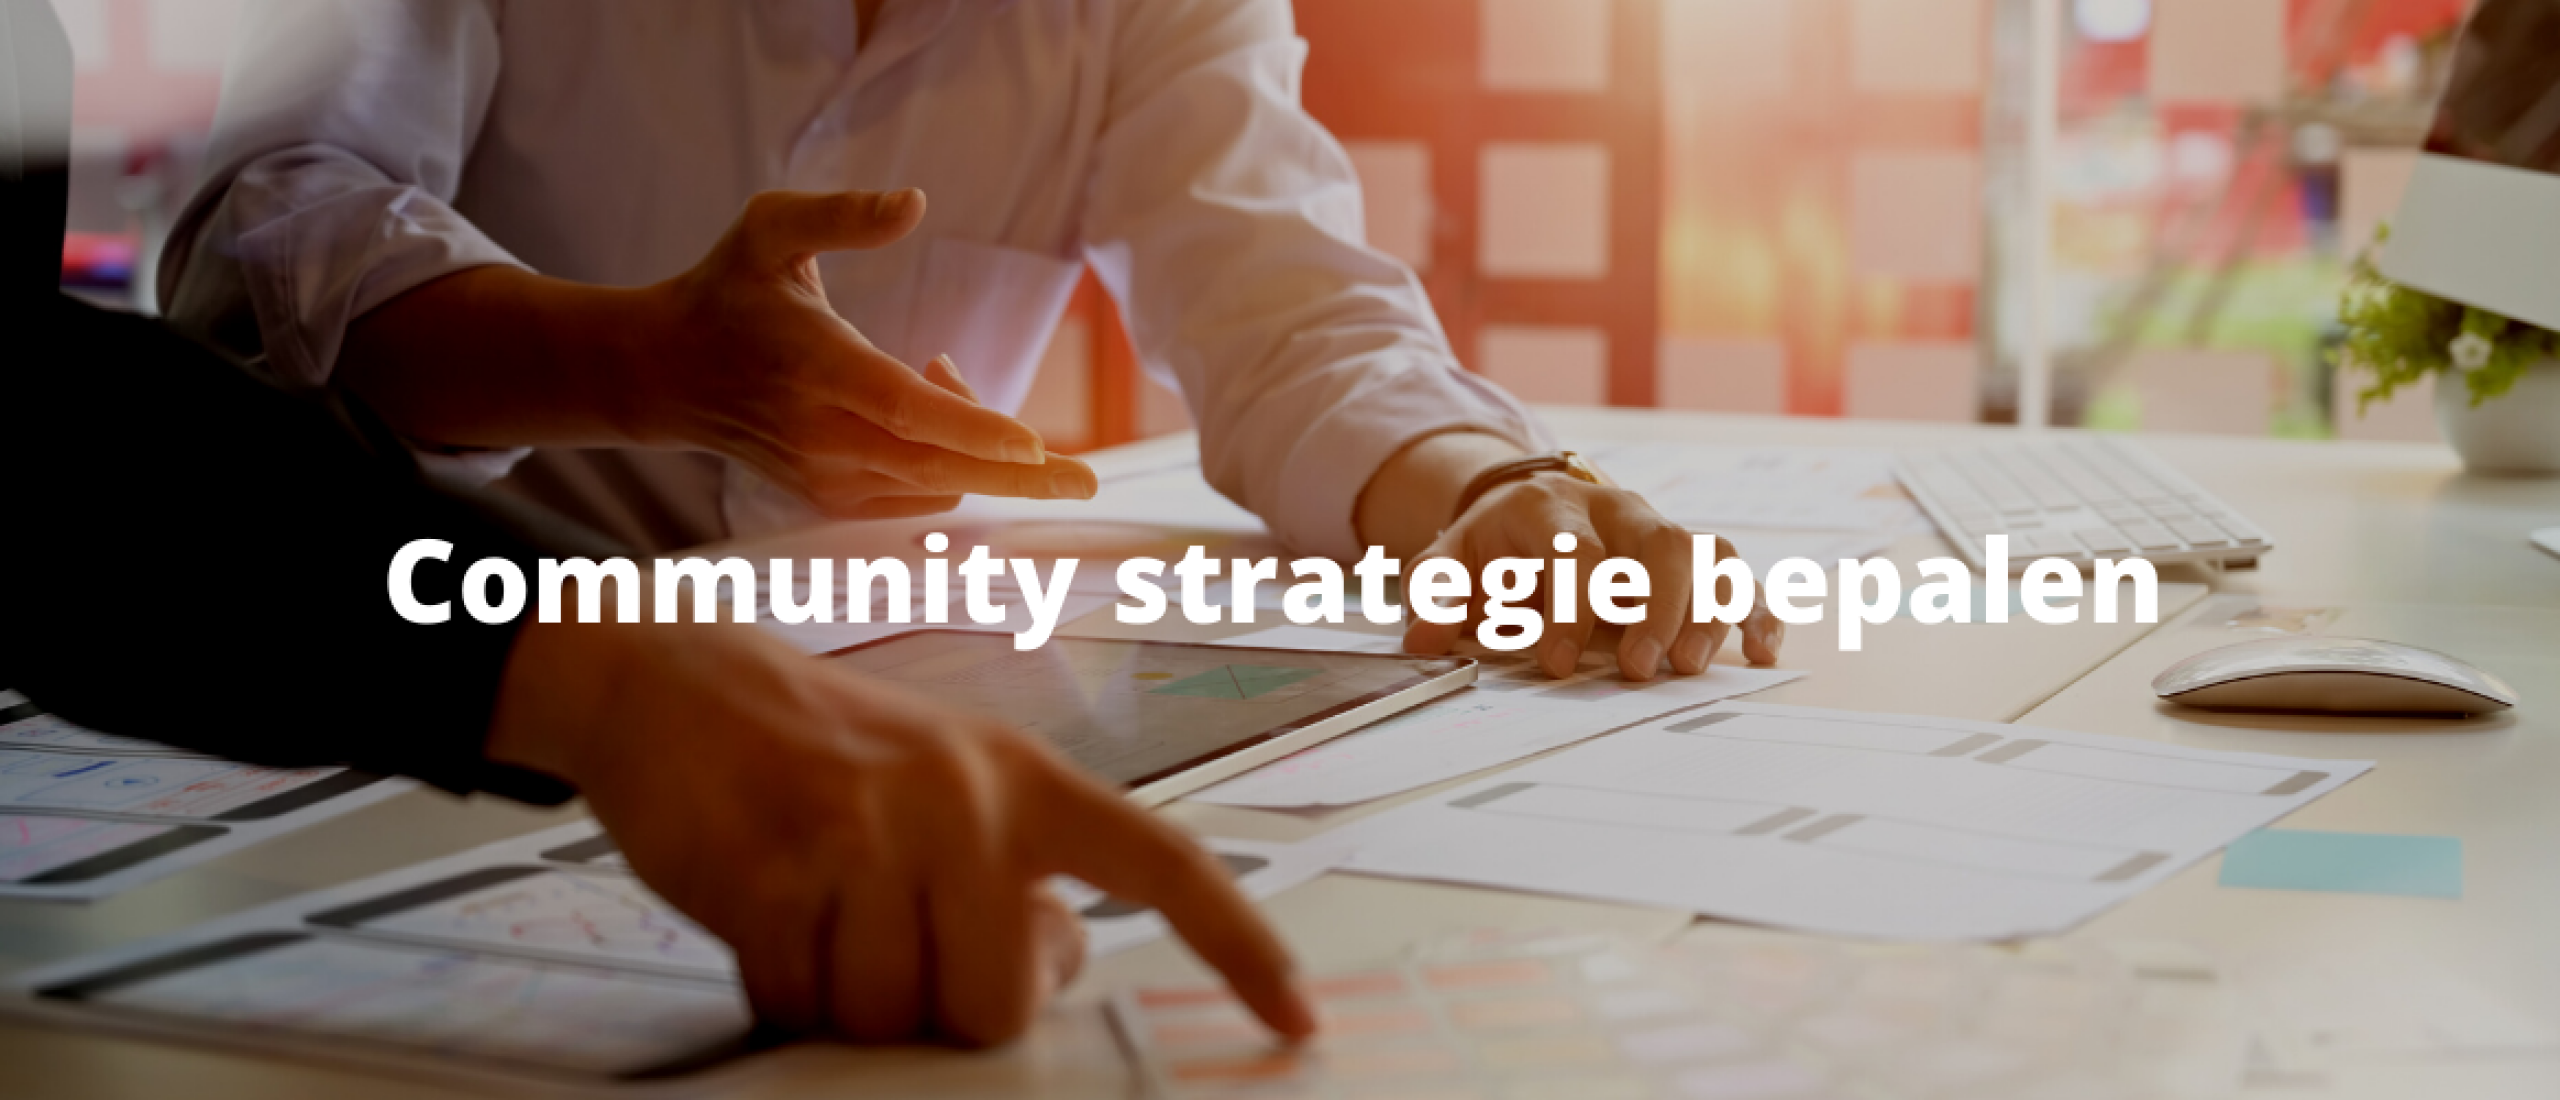 Community strategie bepalen